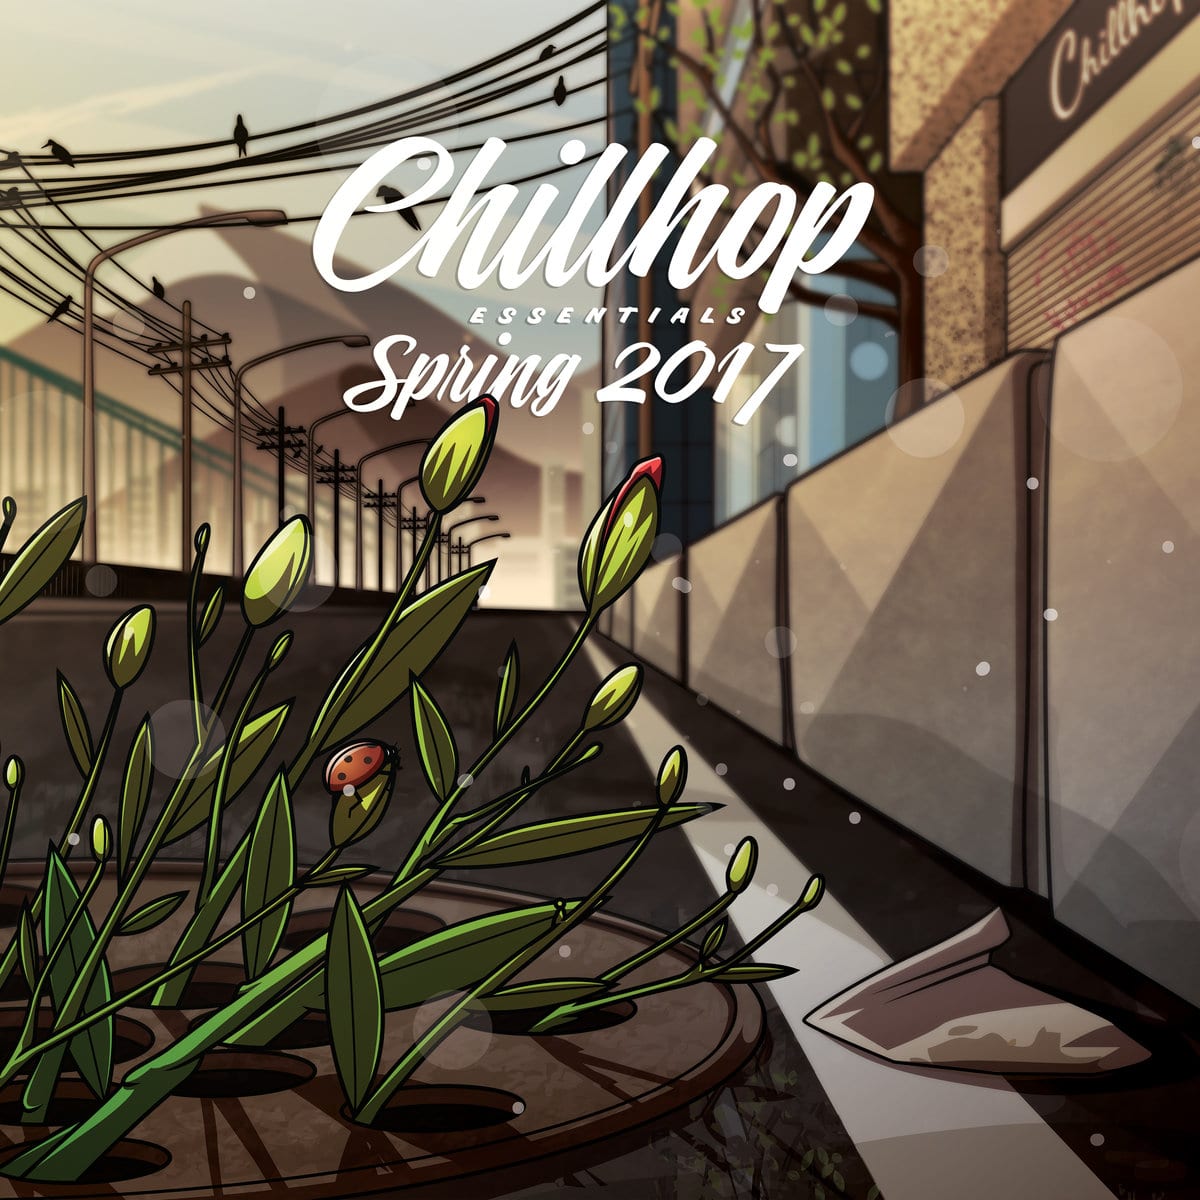 Chillhop Records - "Chillhop Essentials - Spring 2017" (Release)